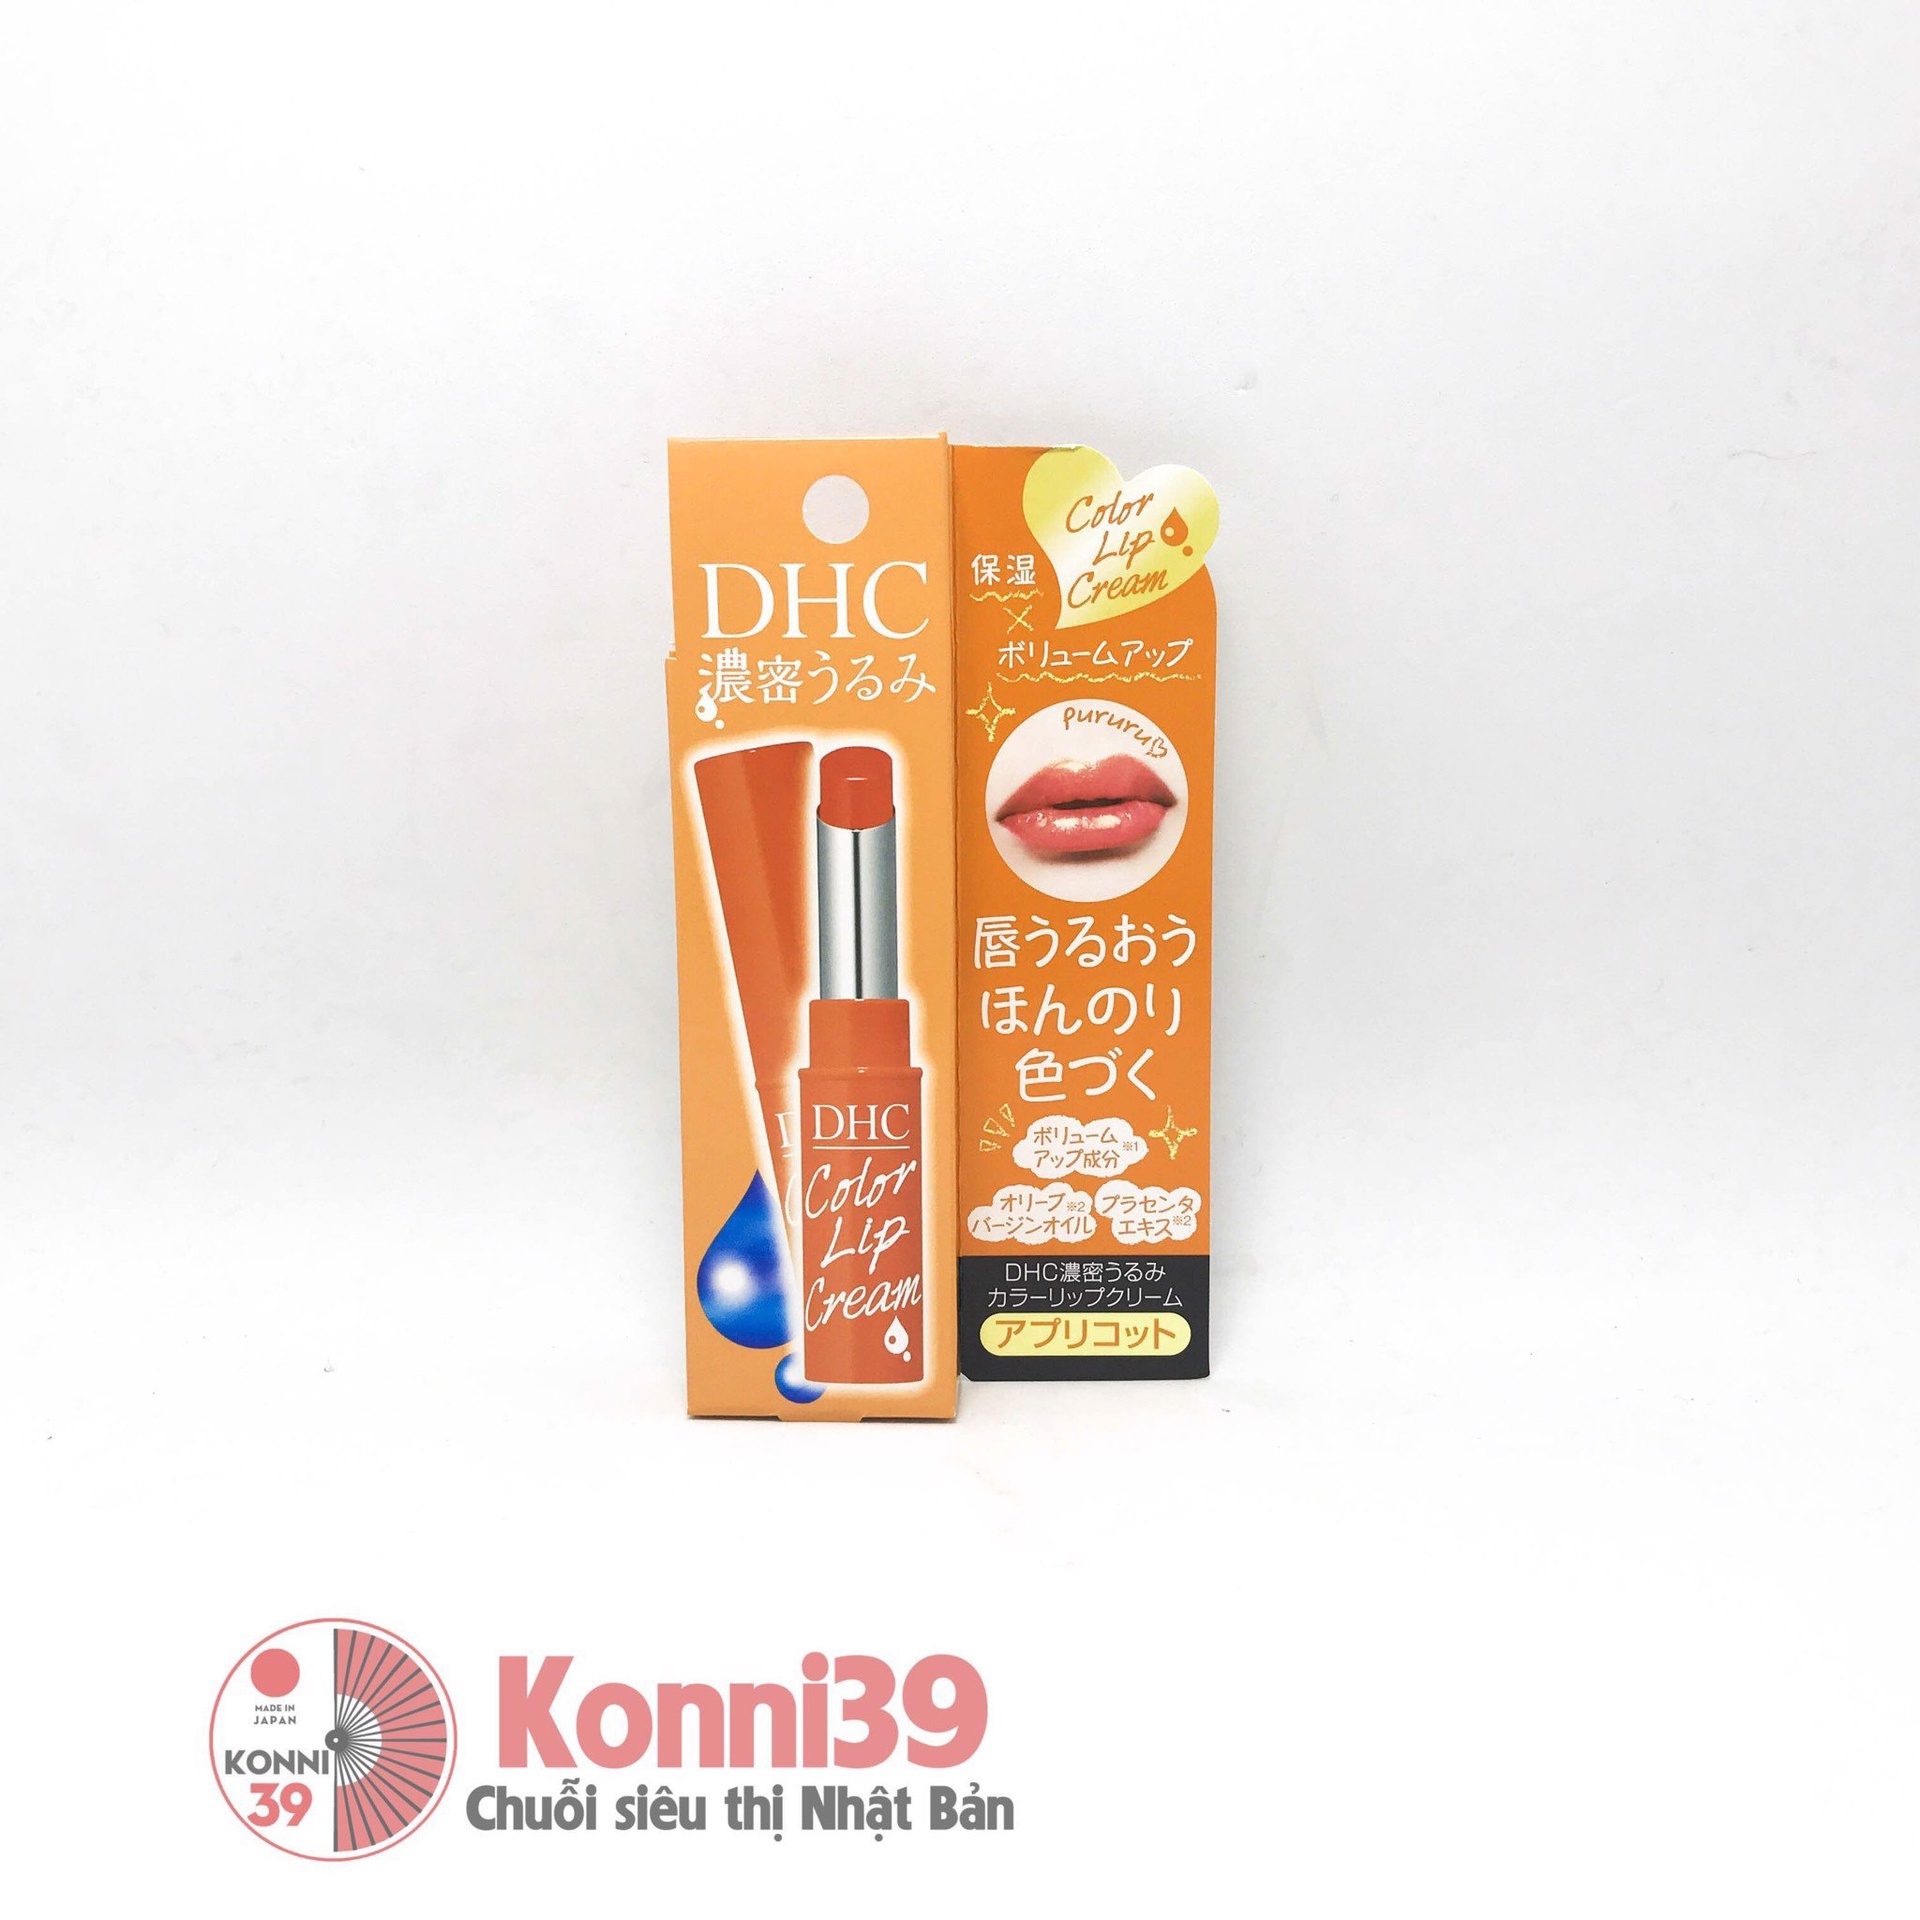 Son dưỡng môi DHC color lip cream 1.5g